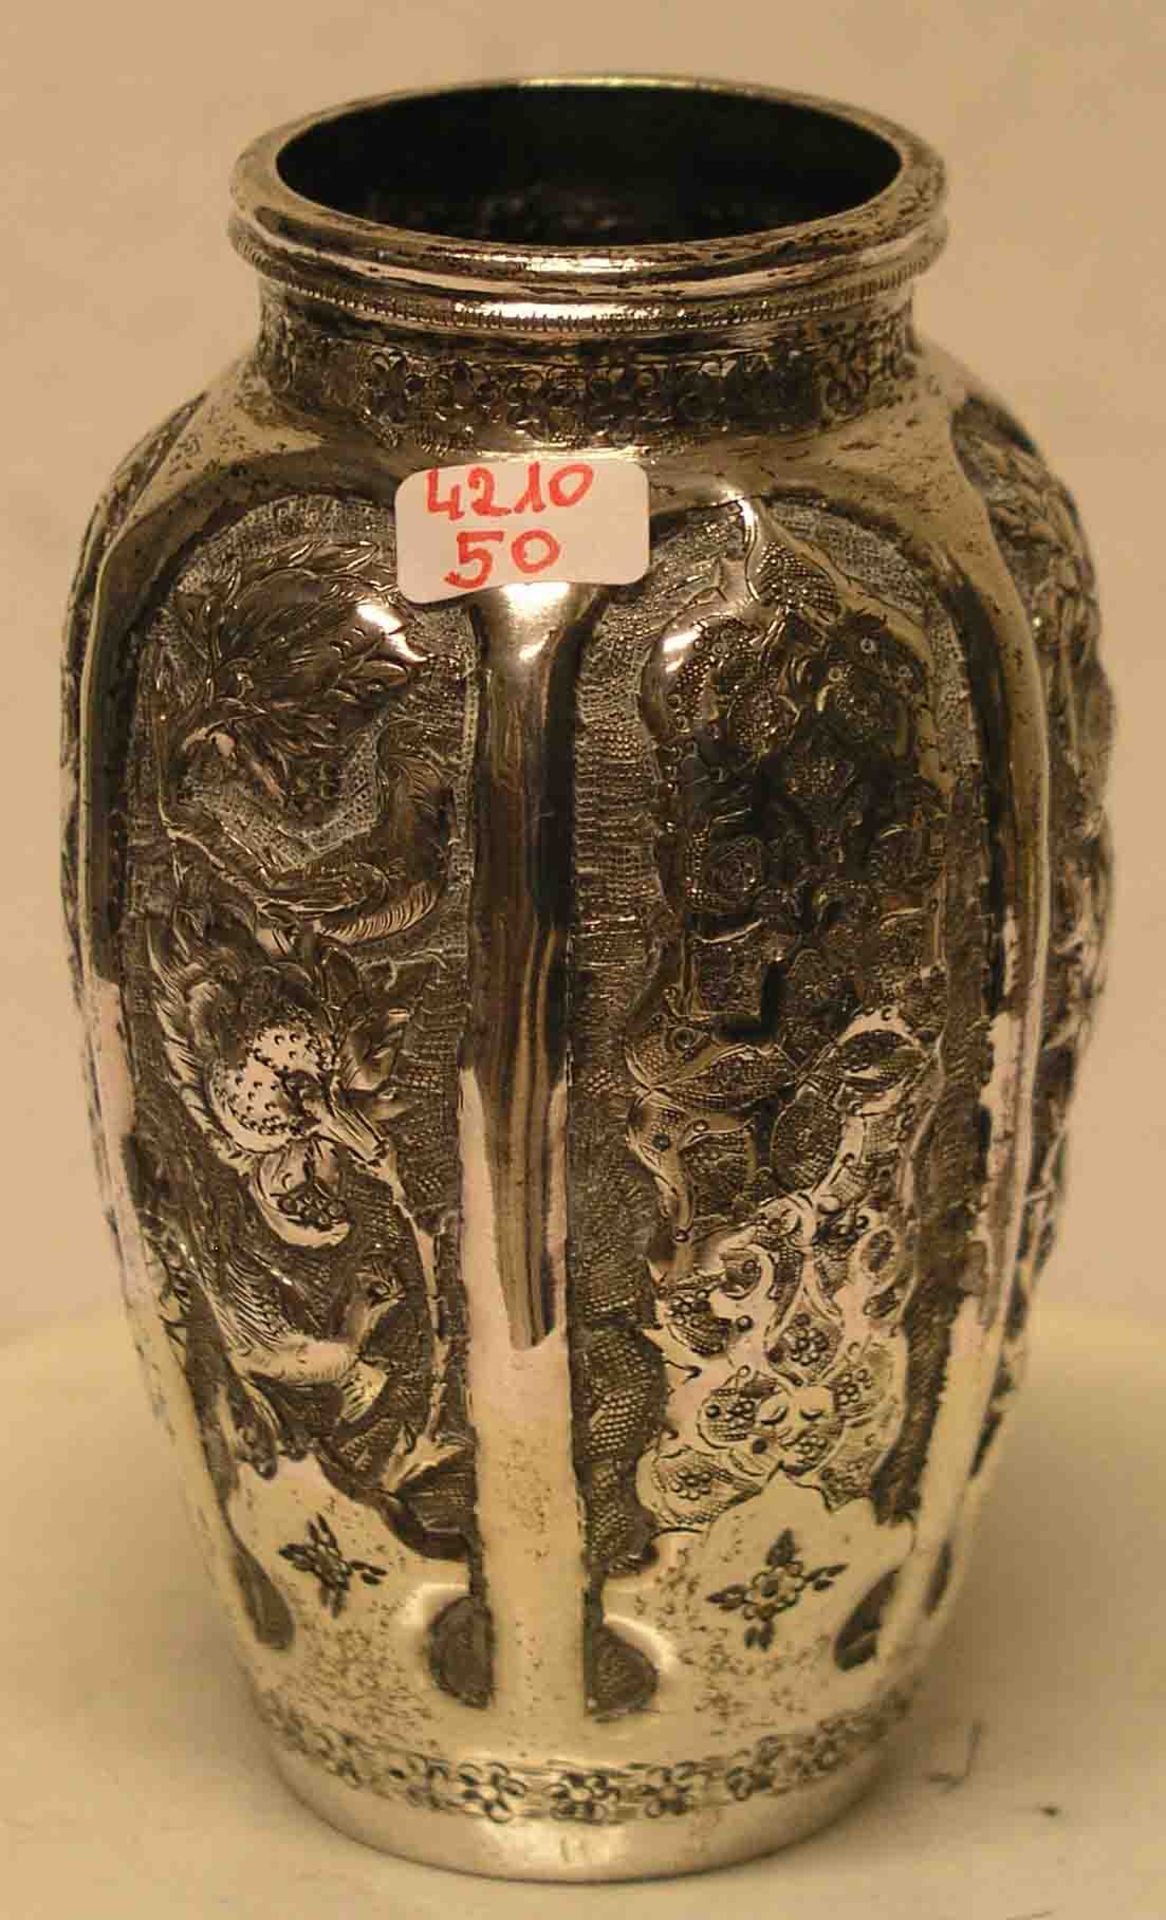 Vase. 800er Silber, nicht gepunzt. Reliefierte Wandung mit Vogel und Ranken-Dekor, Höhe: